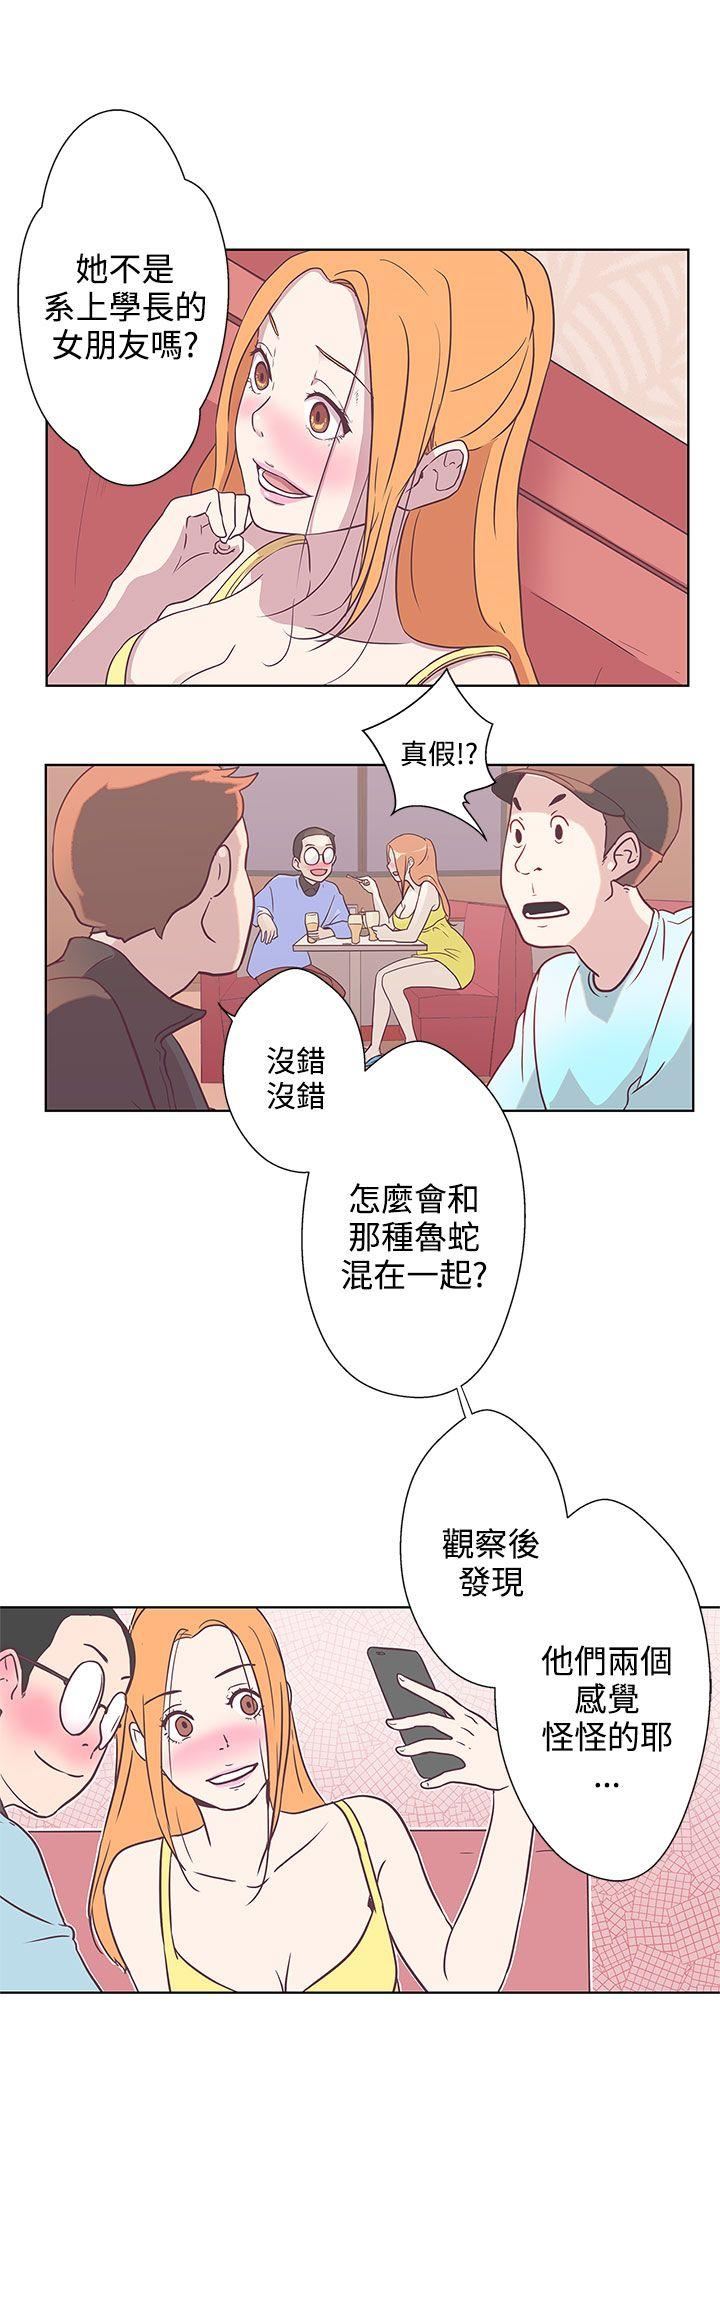 韩国污漫画 LOVE 愛的導航G 第7话 17